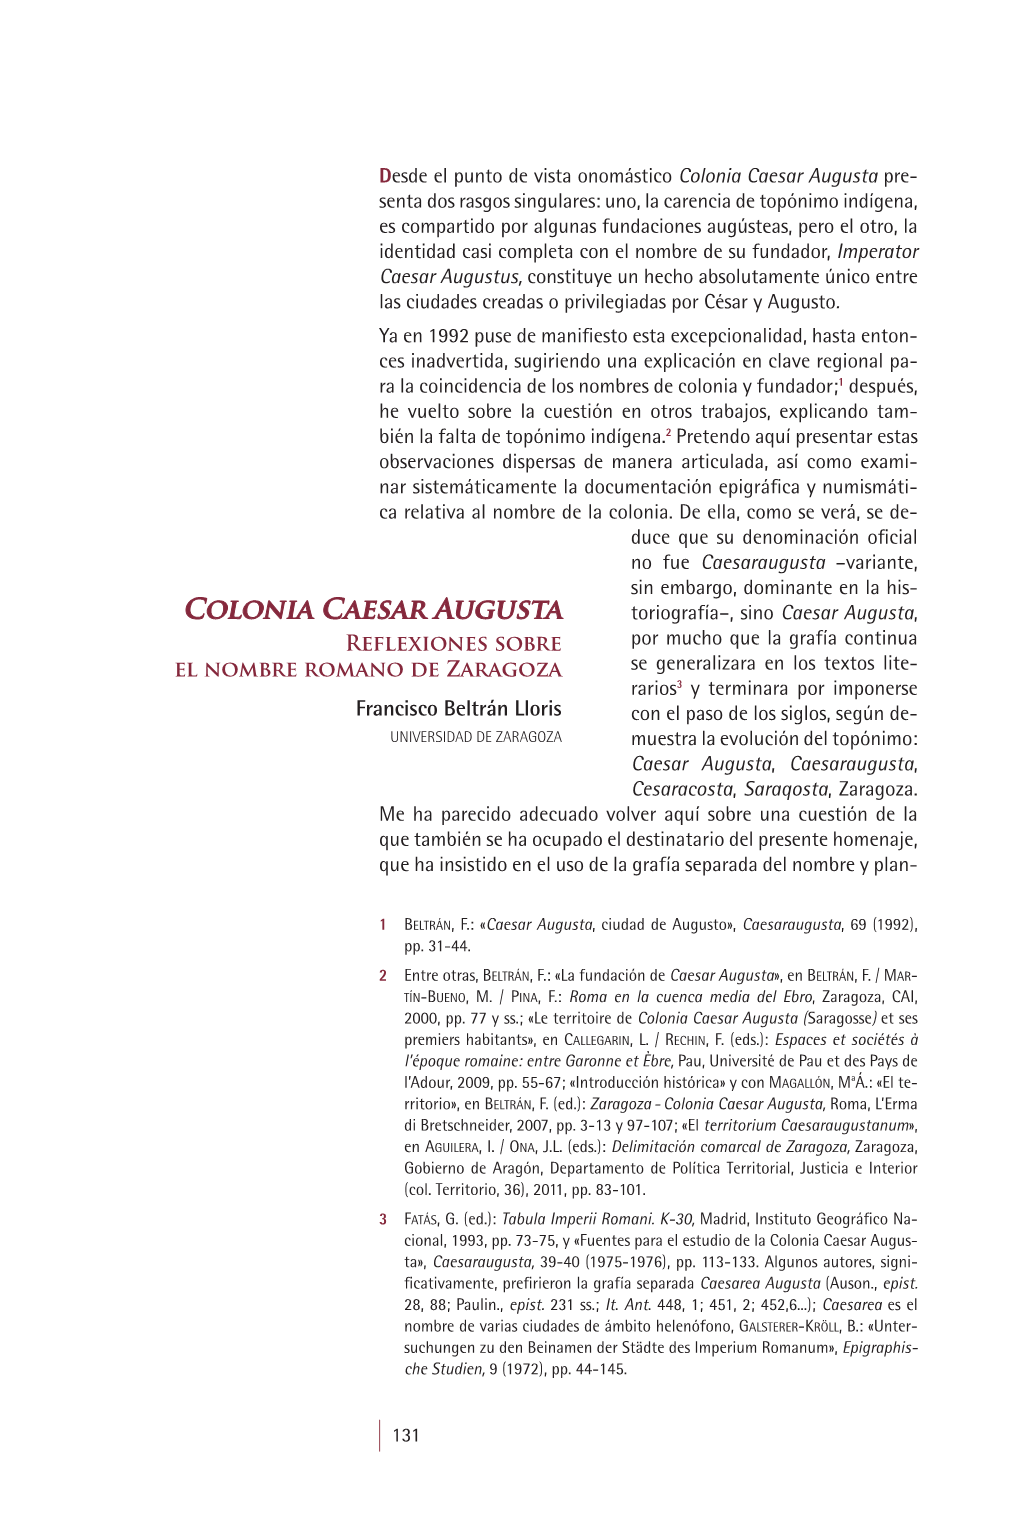 12. Colonia Caesar Augusta. Reflexiones Sobre El Nombre Romano De Zaragoza, Por Francisco Beltrán Lloris